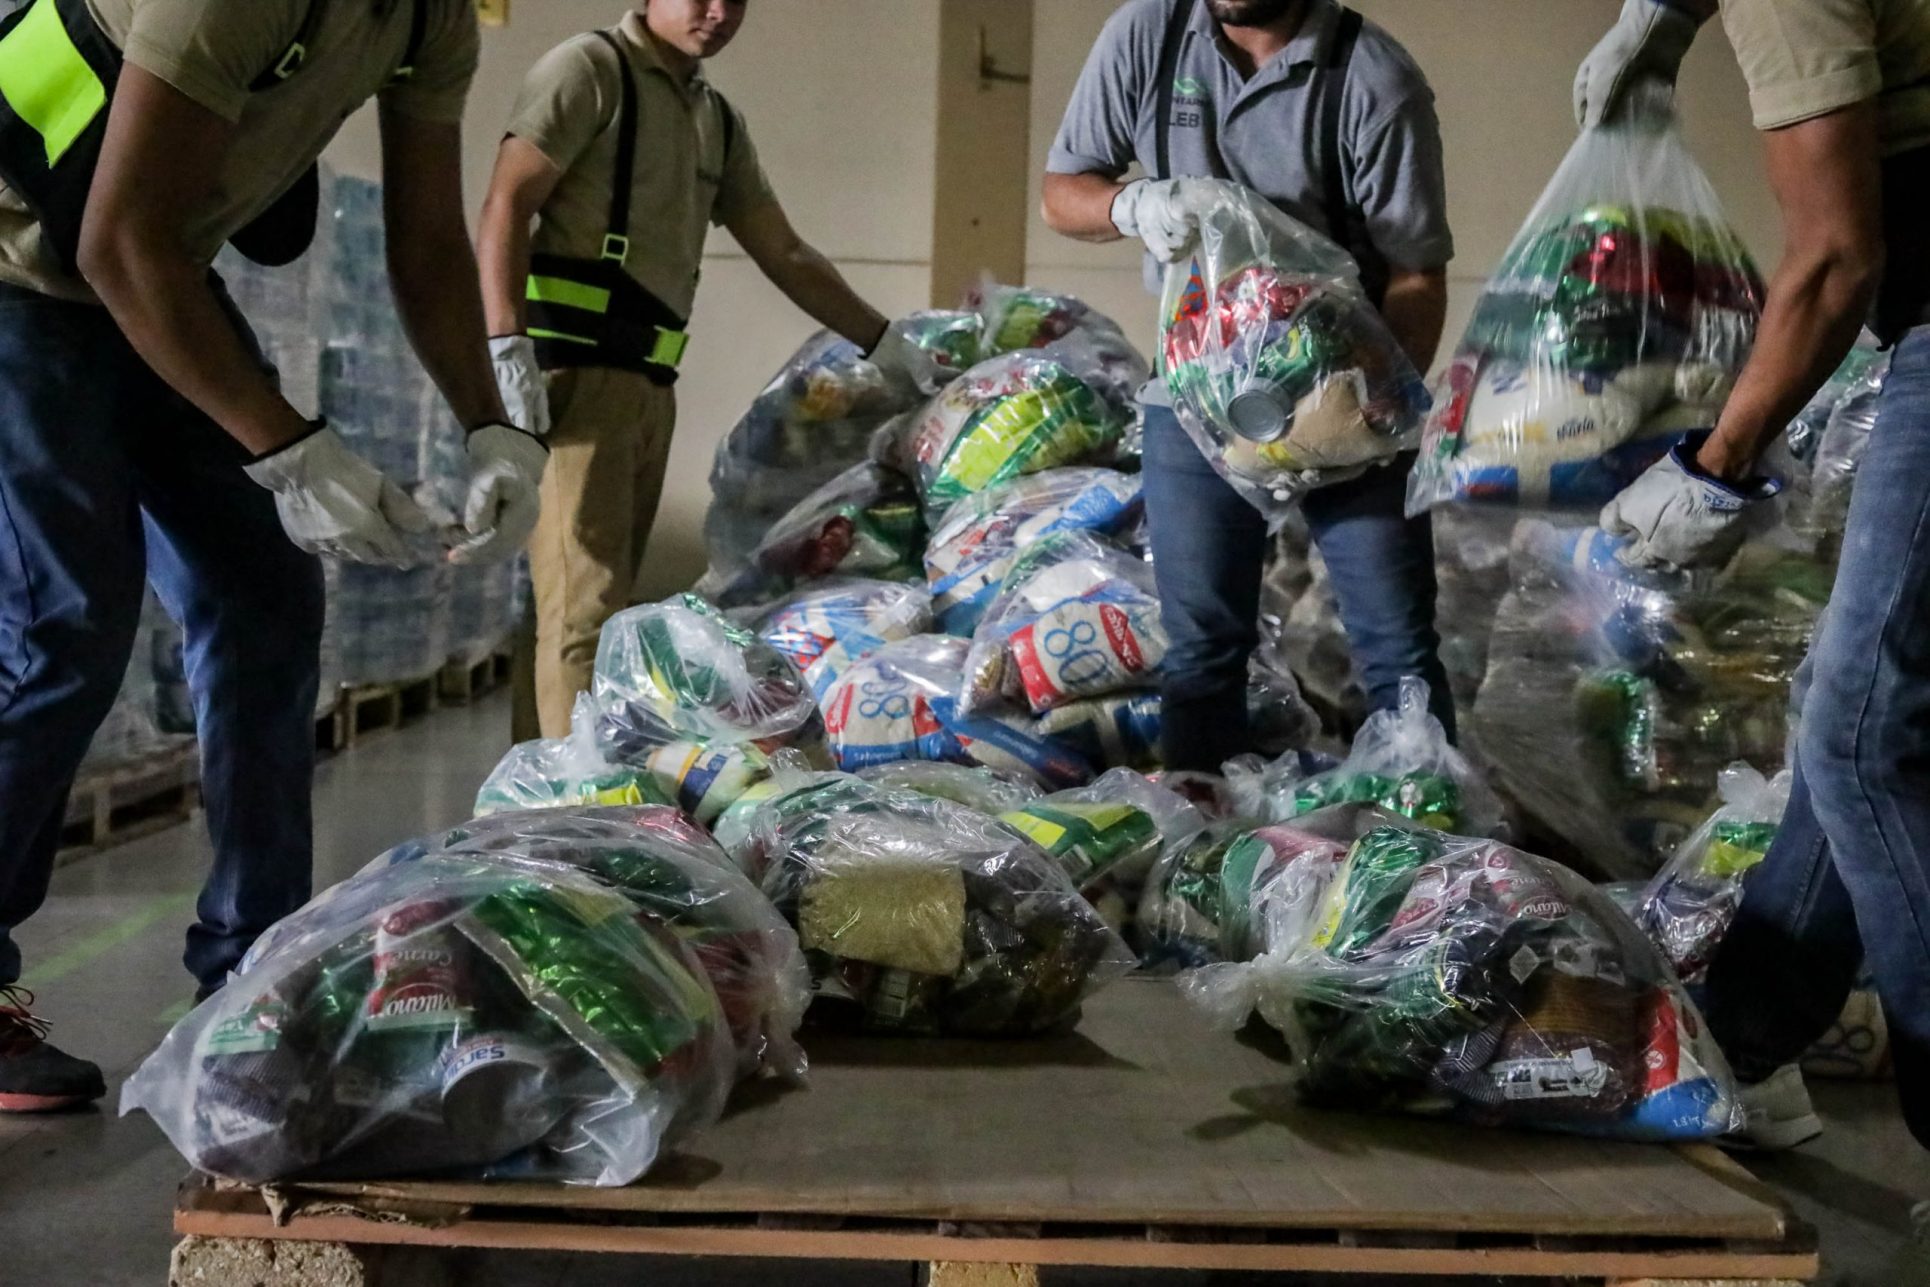 Contraloría: Falta de coordinación interinstitucional entrabó entrega de alimentos a más necesitados